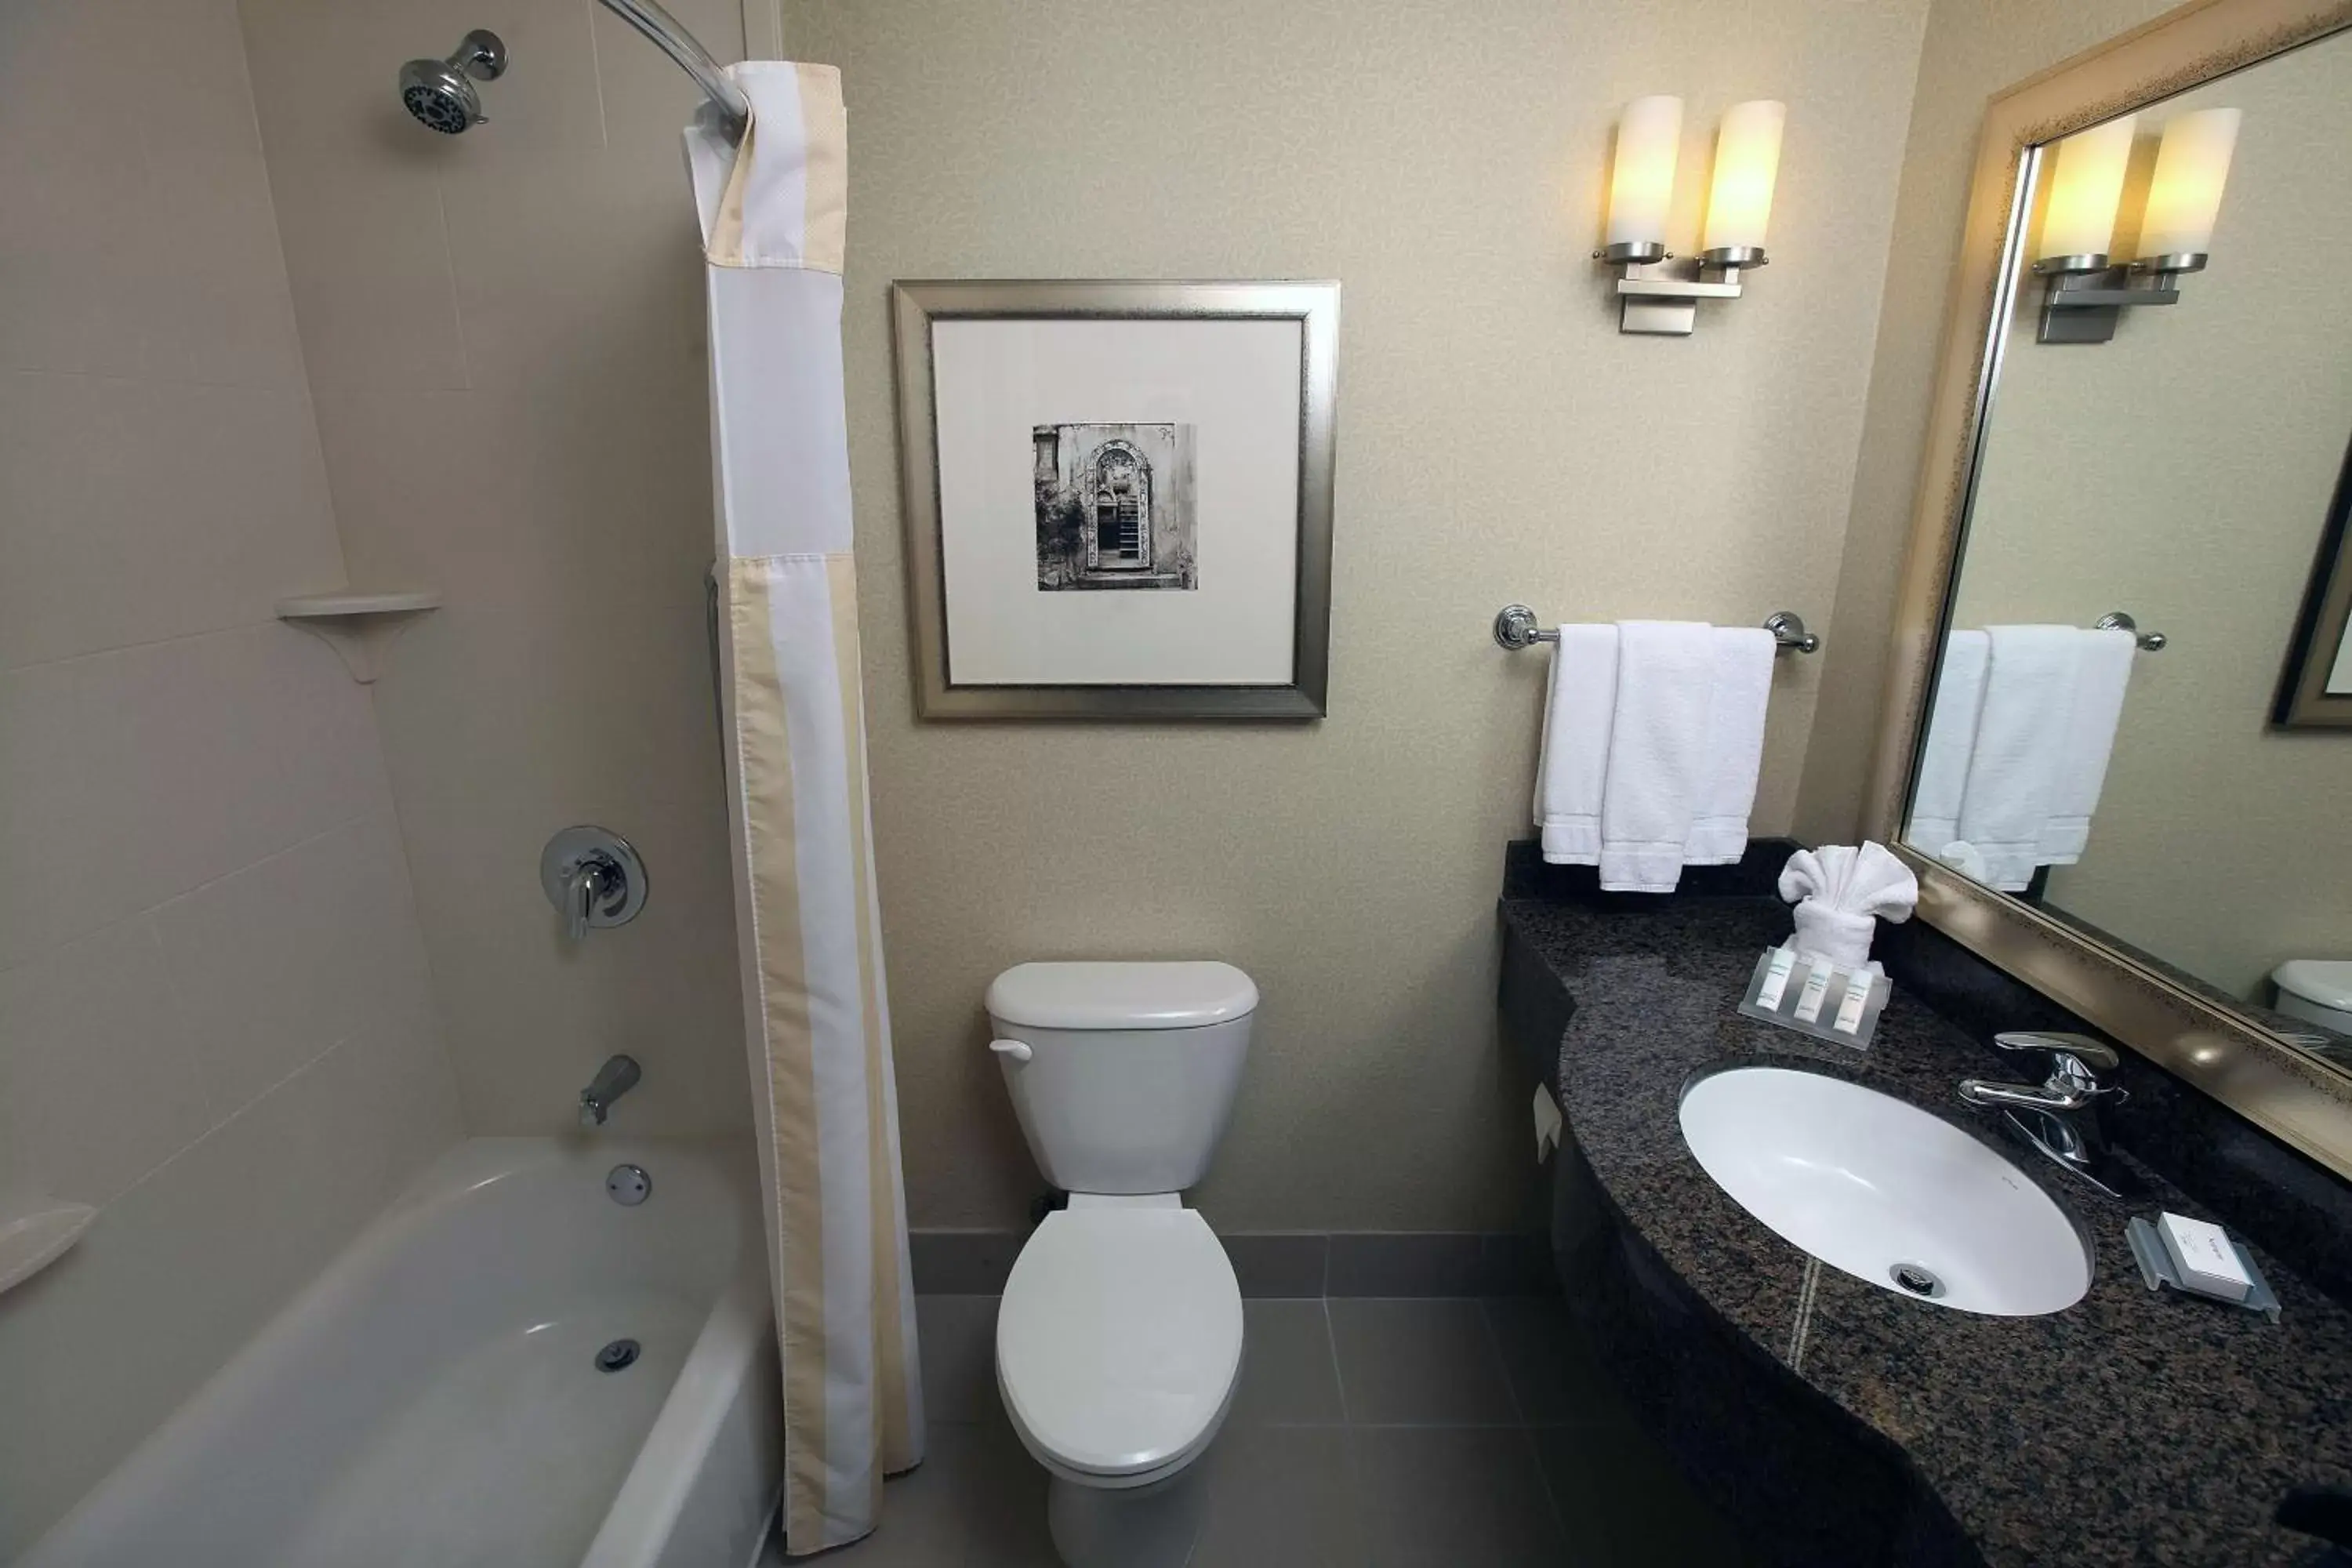 Bathroom in Hilton Garden Inn Sioux Falls South